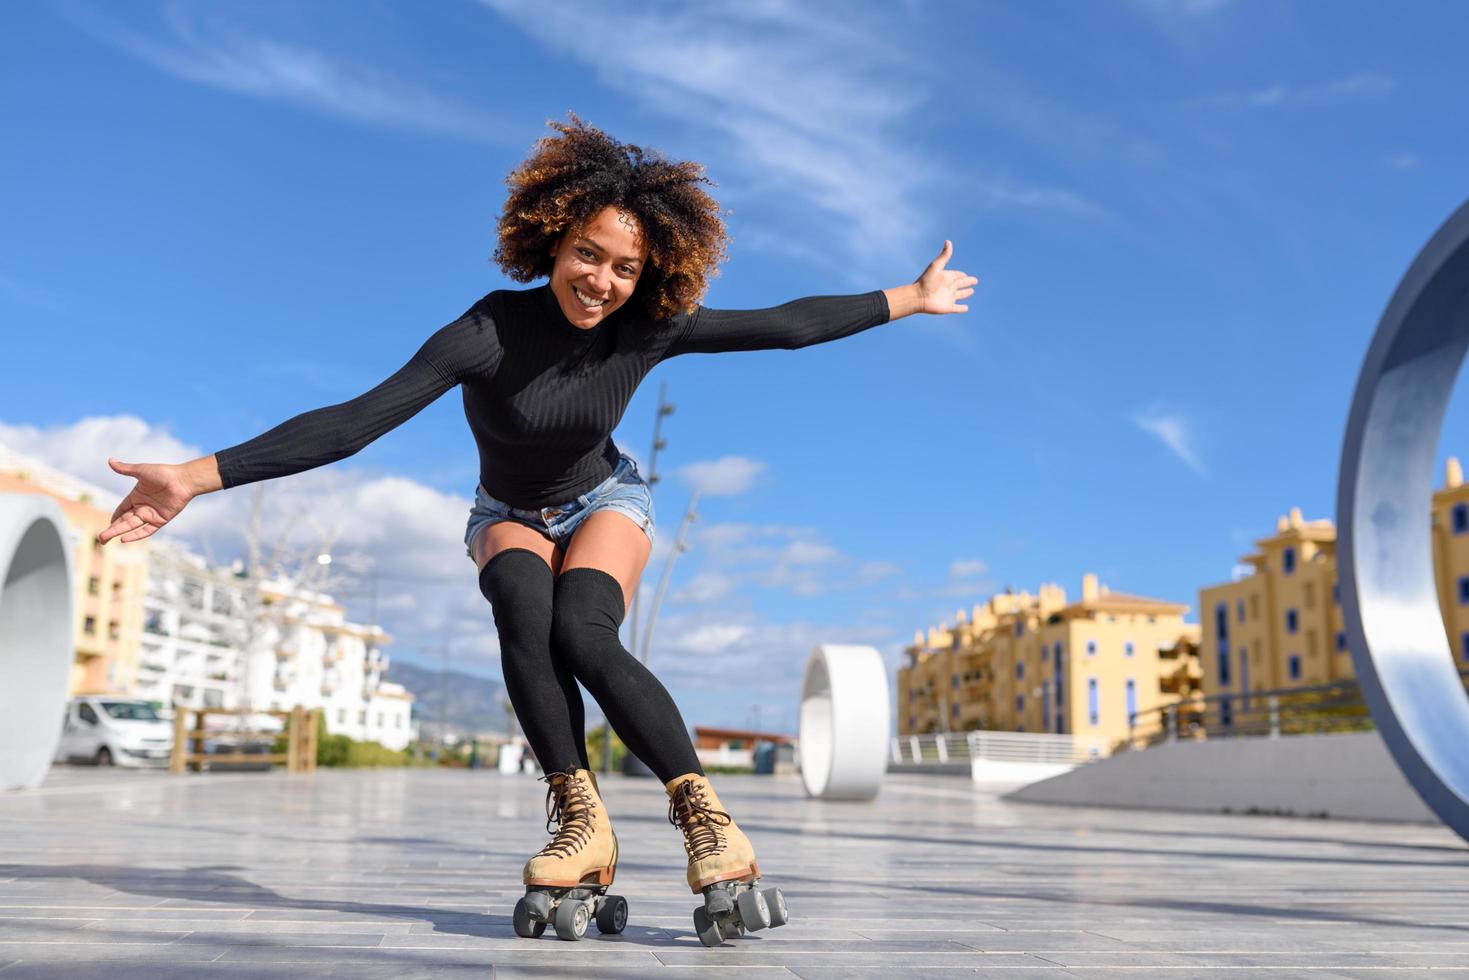 mujer negra, en, patines, equitación, aire libre, en, urbano, calle foto